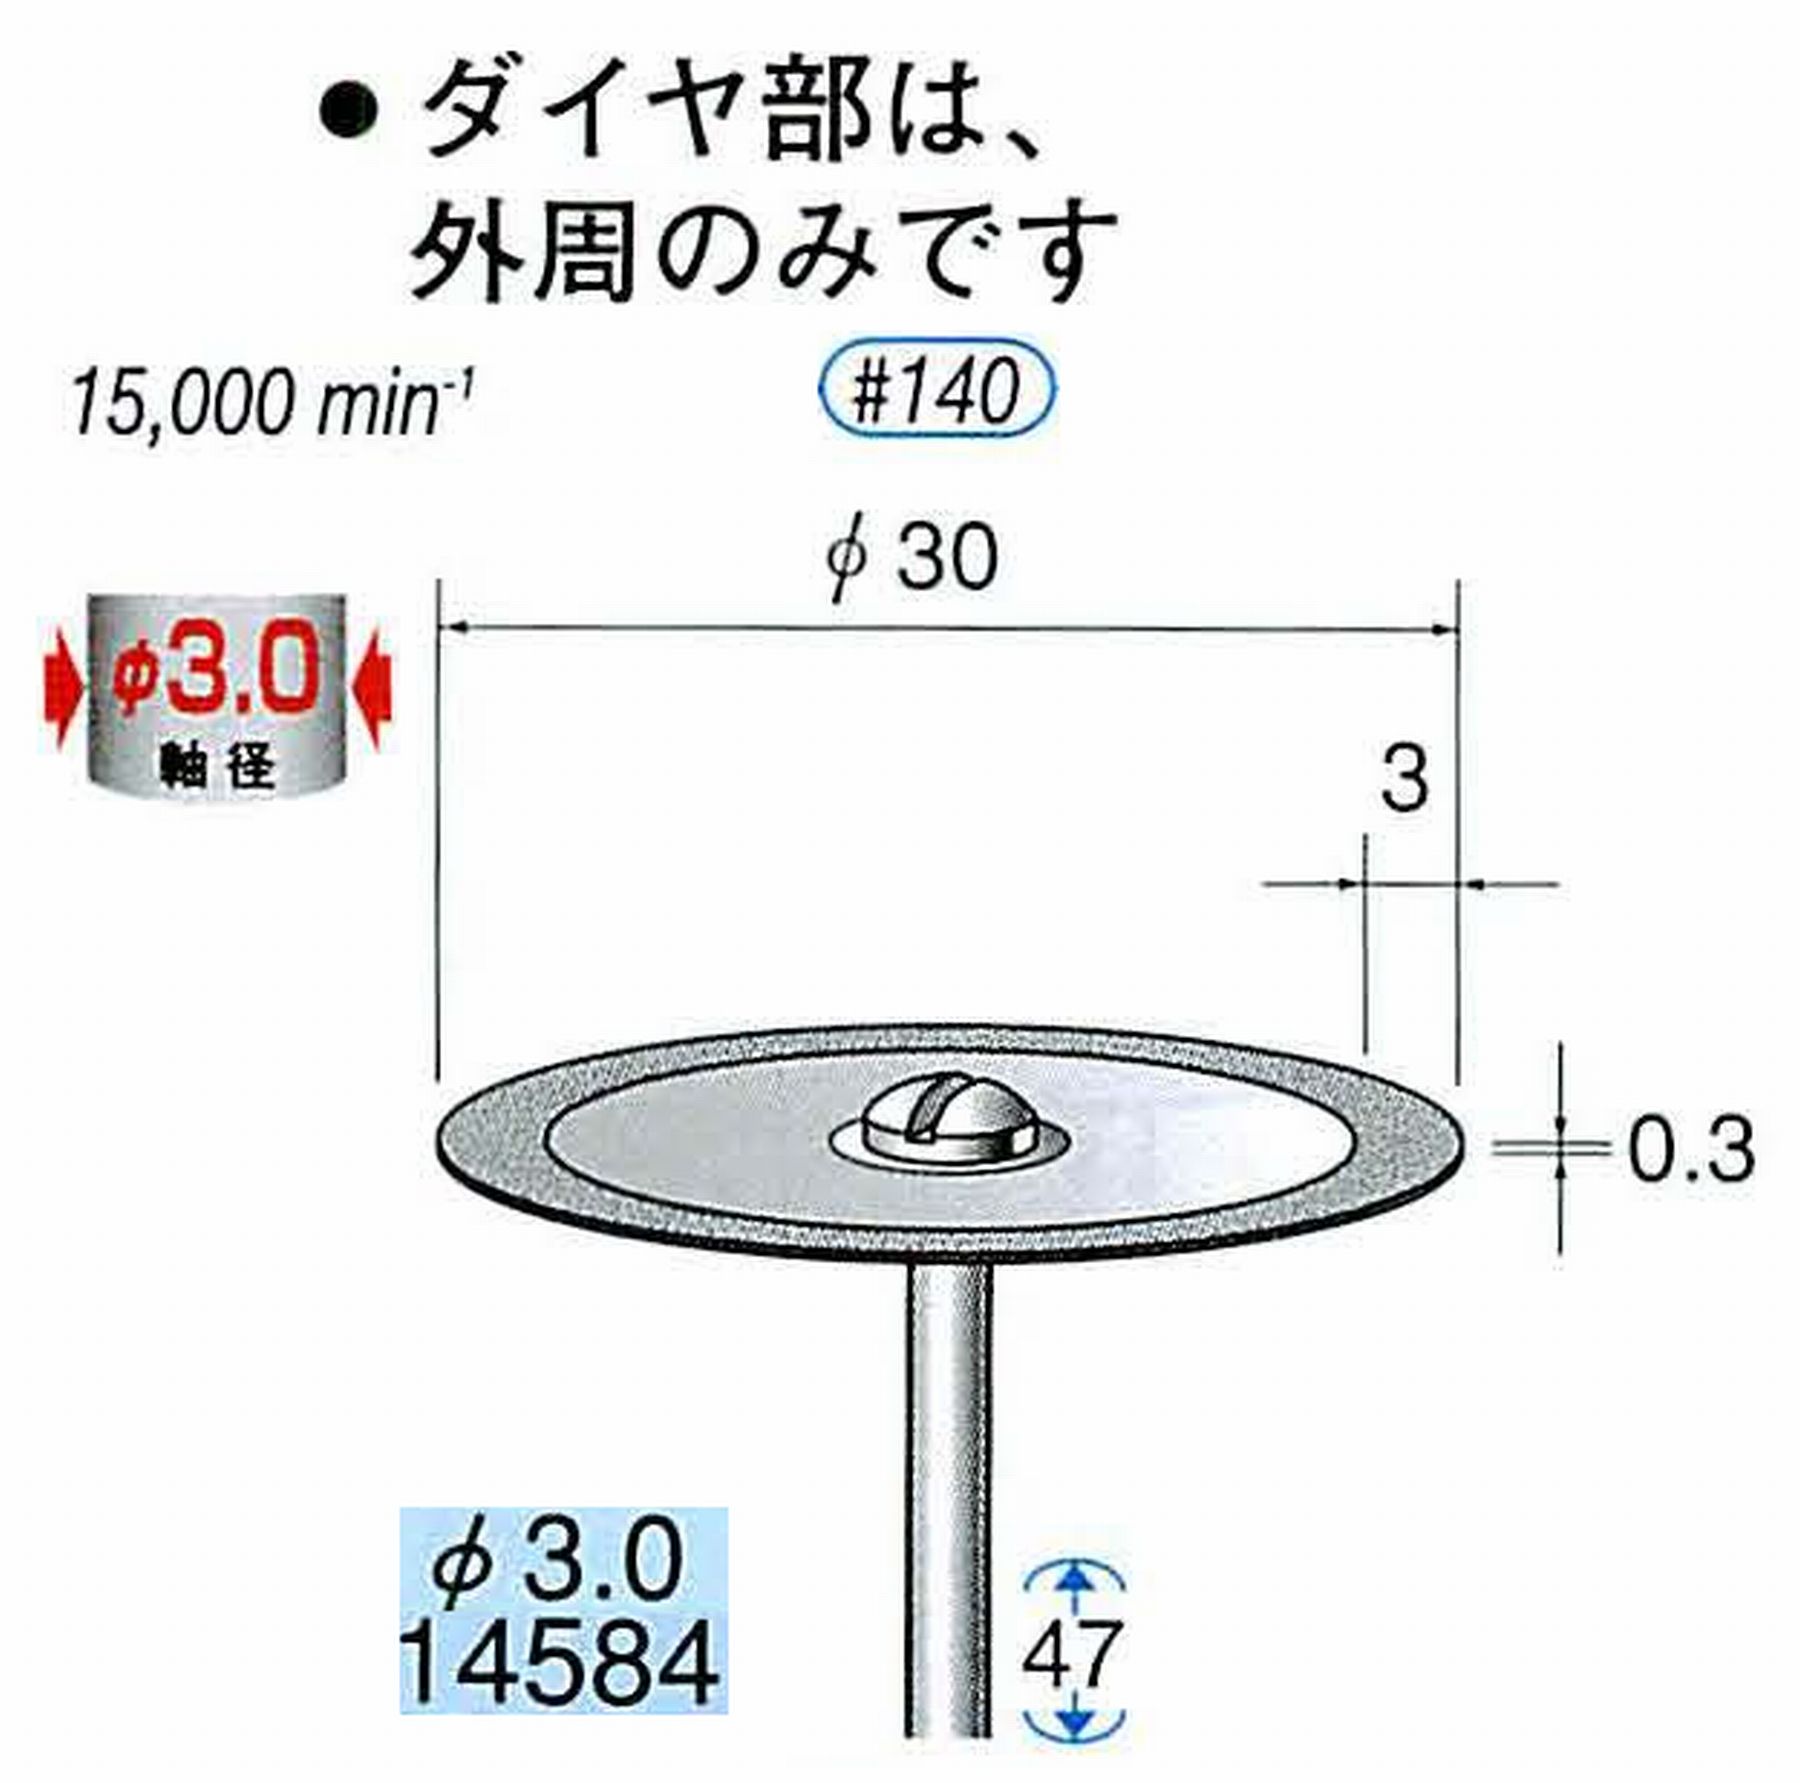 ナカニシ/NAKANISHI ダイヤモンドカッティングディスク＆バー メタルボンドタイプ φ3.0mm : 値打価格!, welcome to